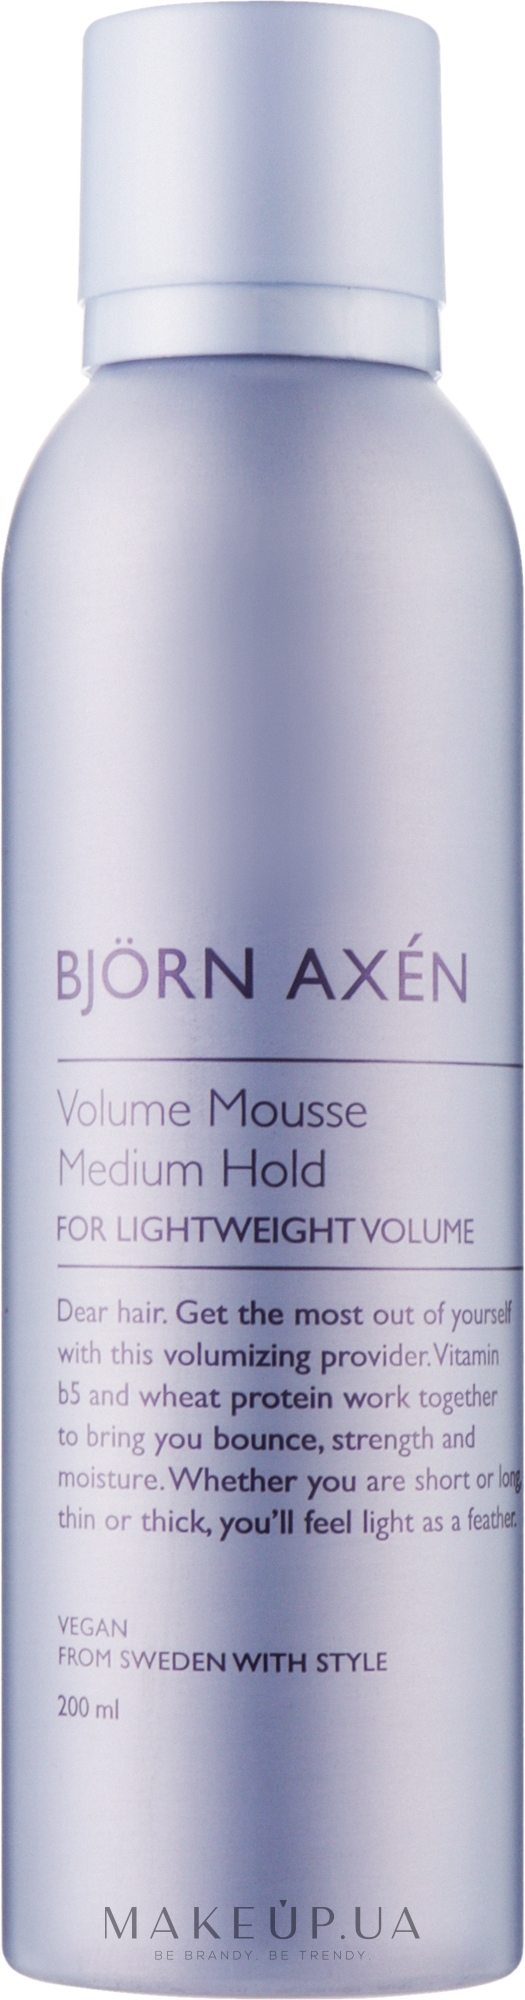 Мусс для волос средней фиксации - BjOrn AxEn Volume Mousse Medium Hold — фото 200ml